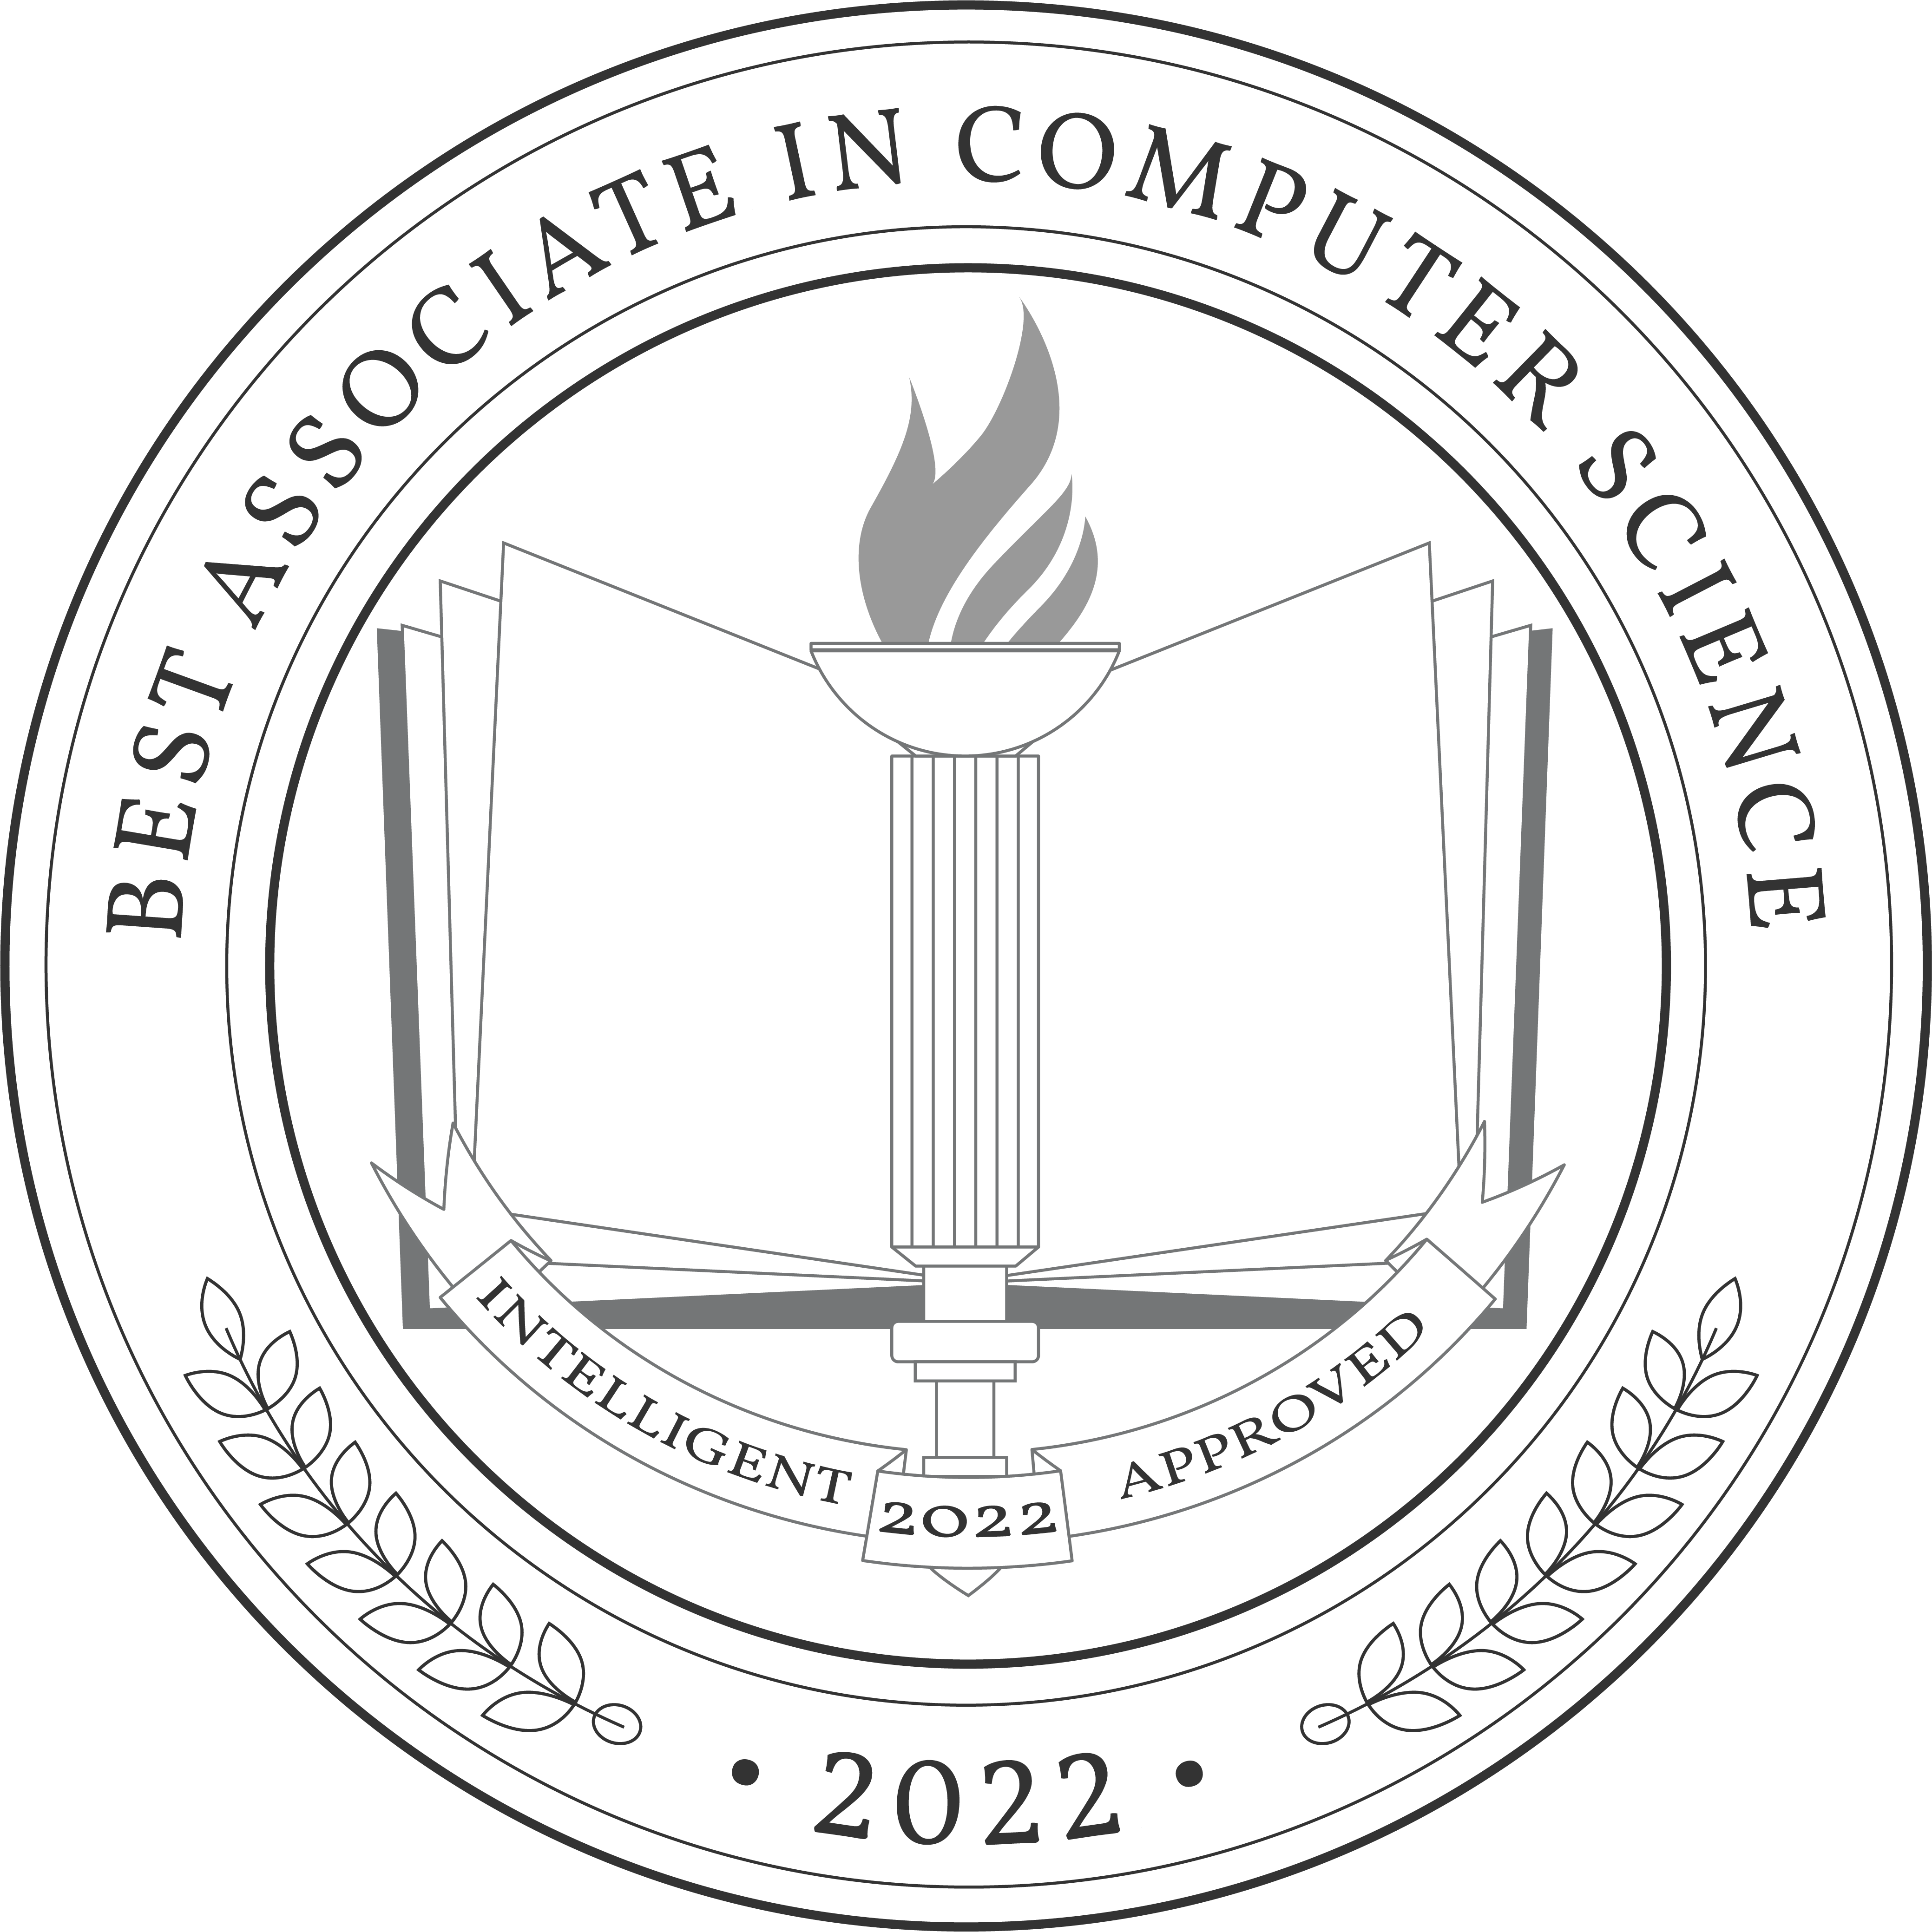 Best Associate in Computer Science Badge